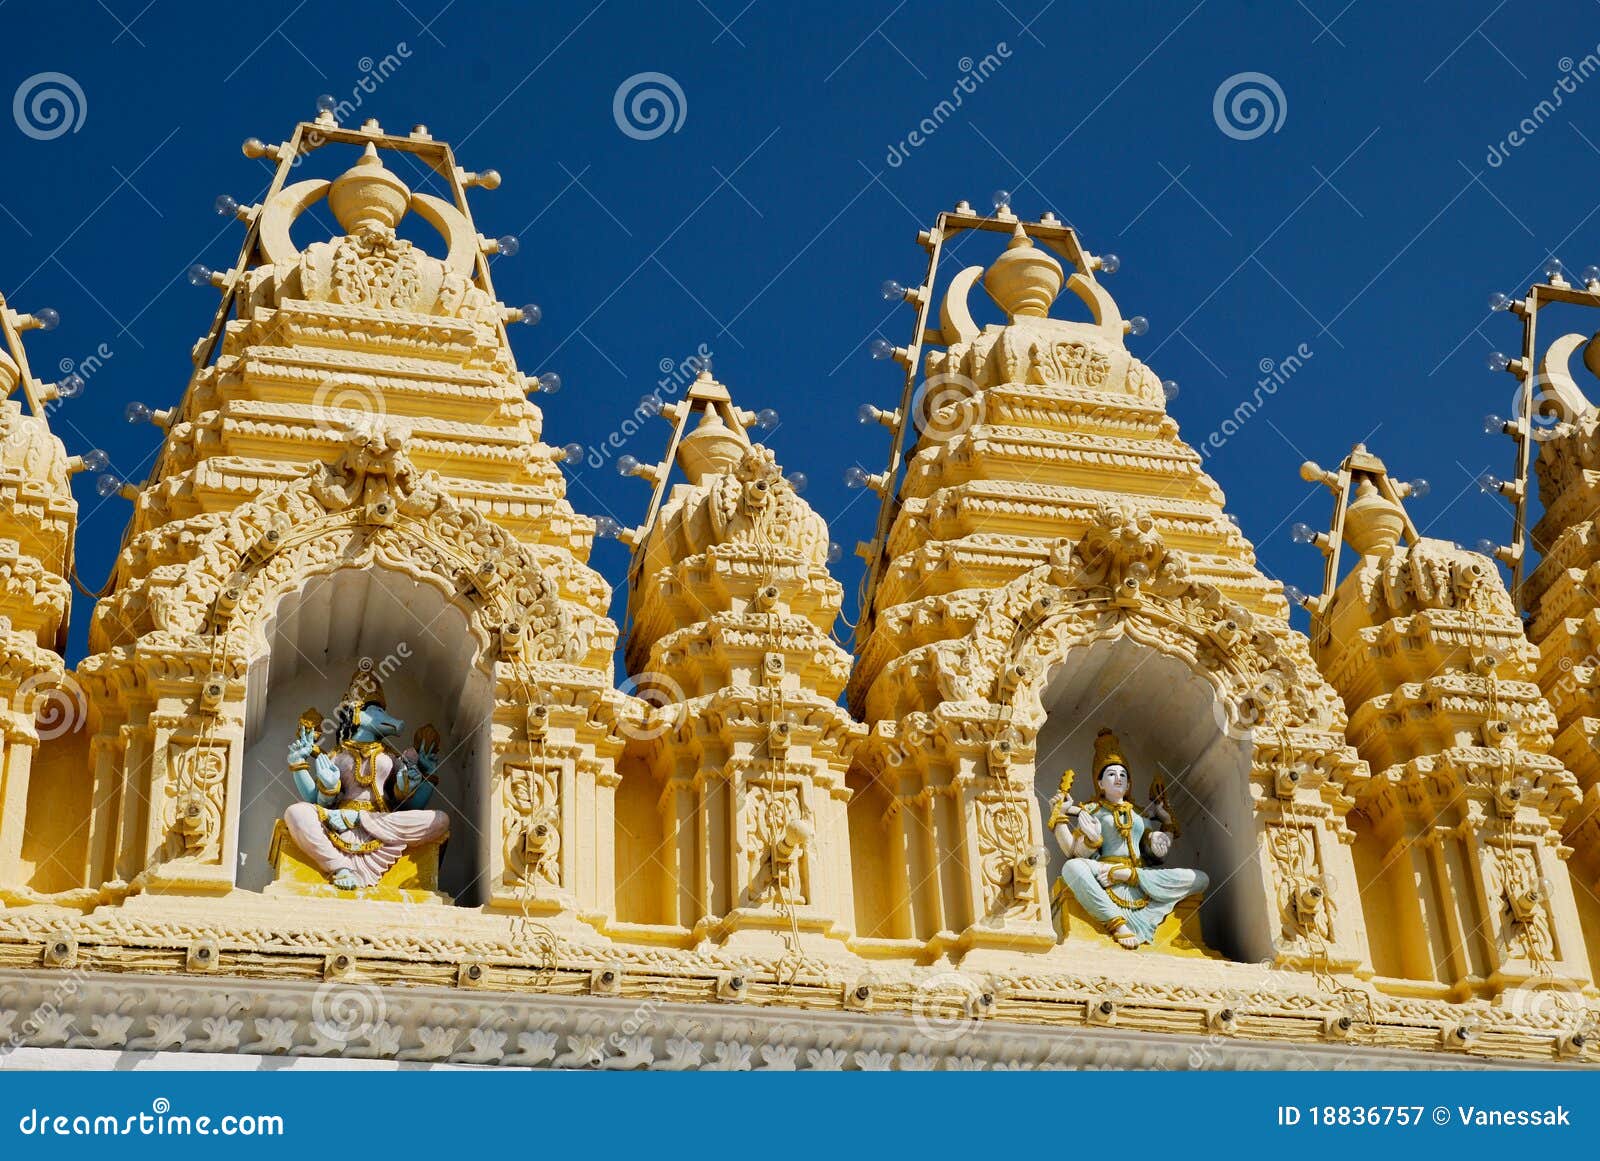 the mysore temple in india